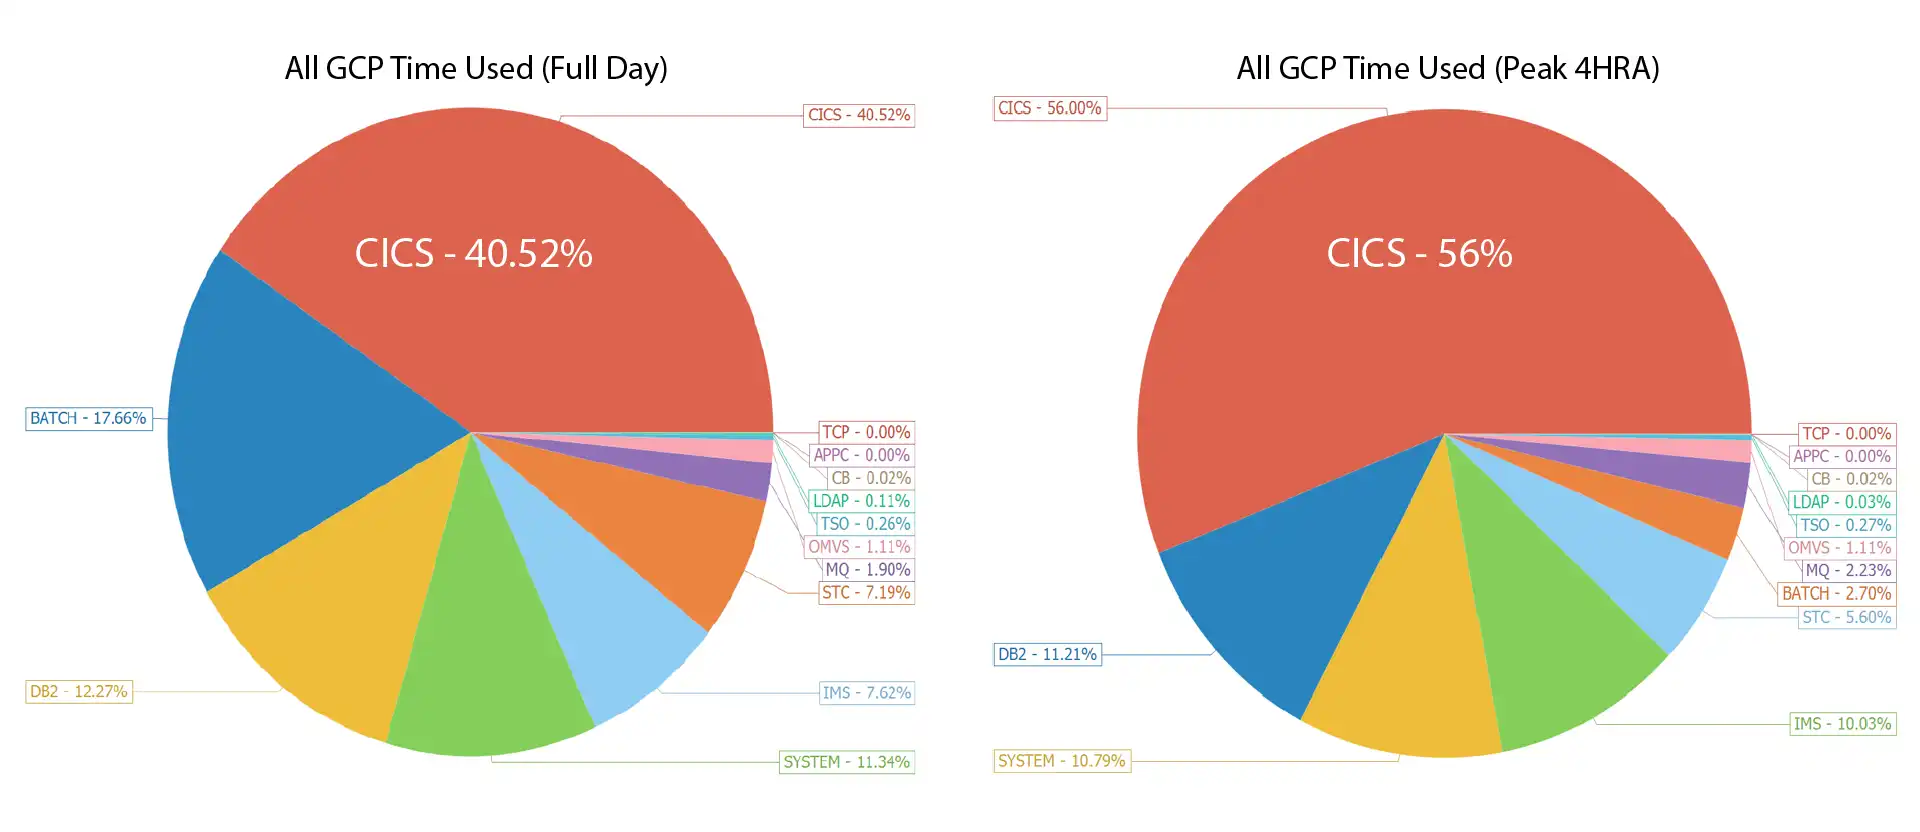 Figure 2 - Percentages CICS Full Day vs Peak 4HRA